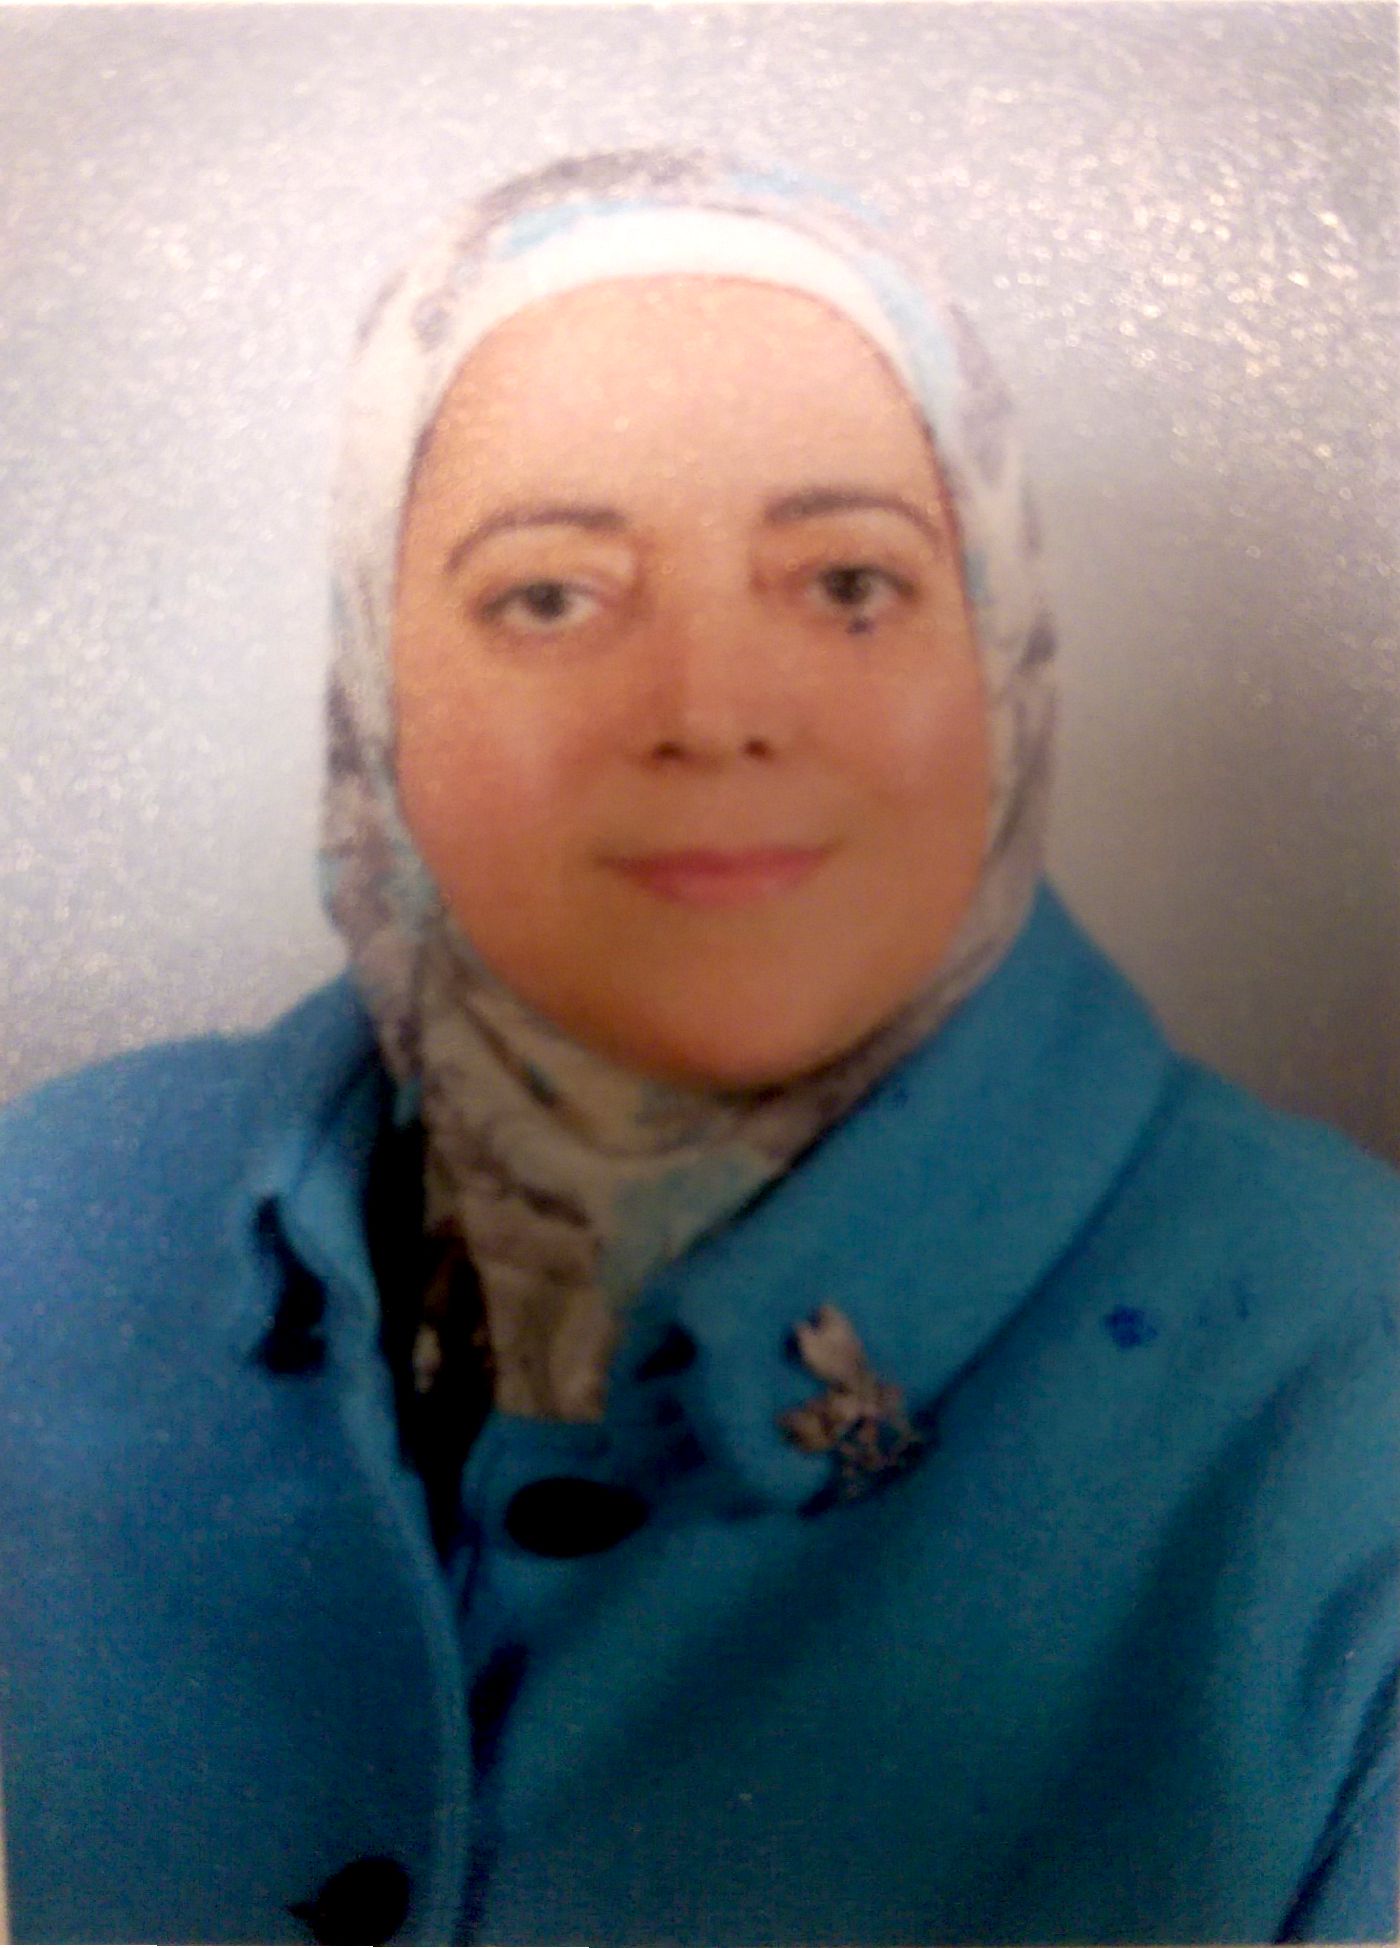 Hala Helmy Mohamed Zayed